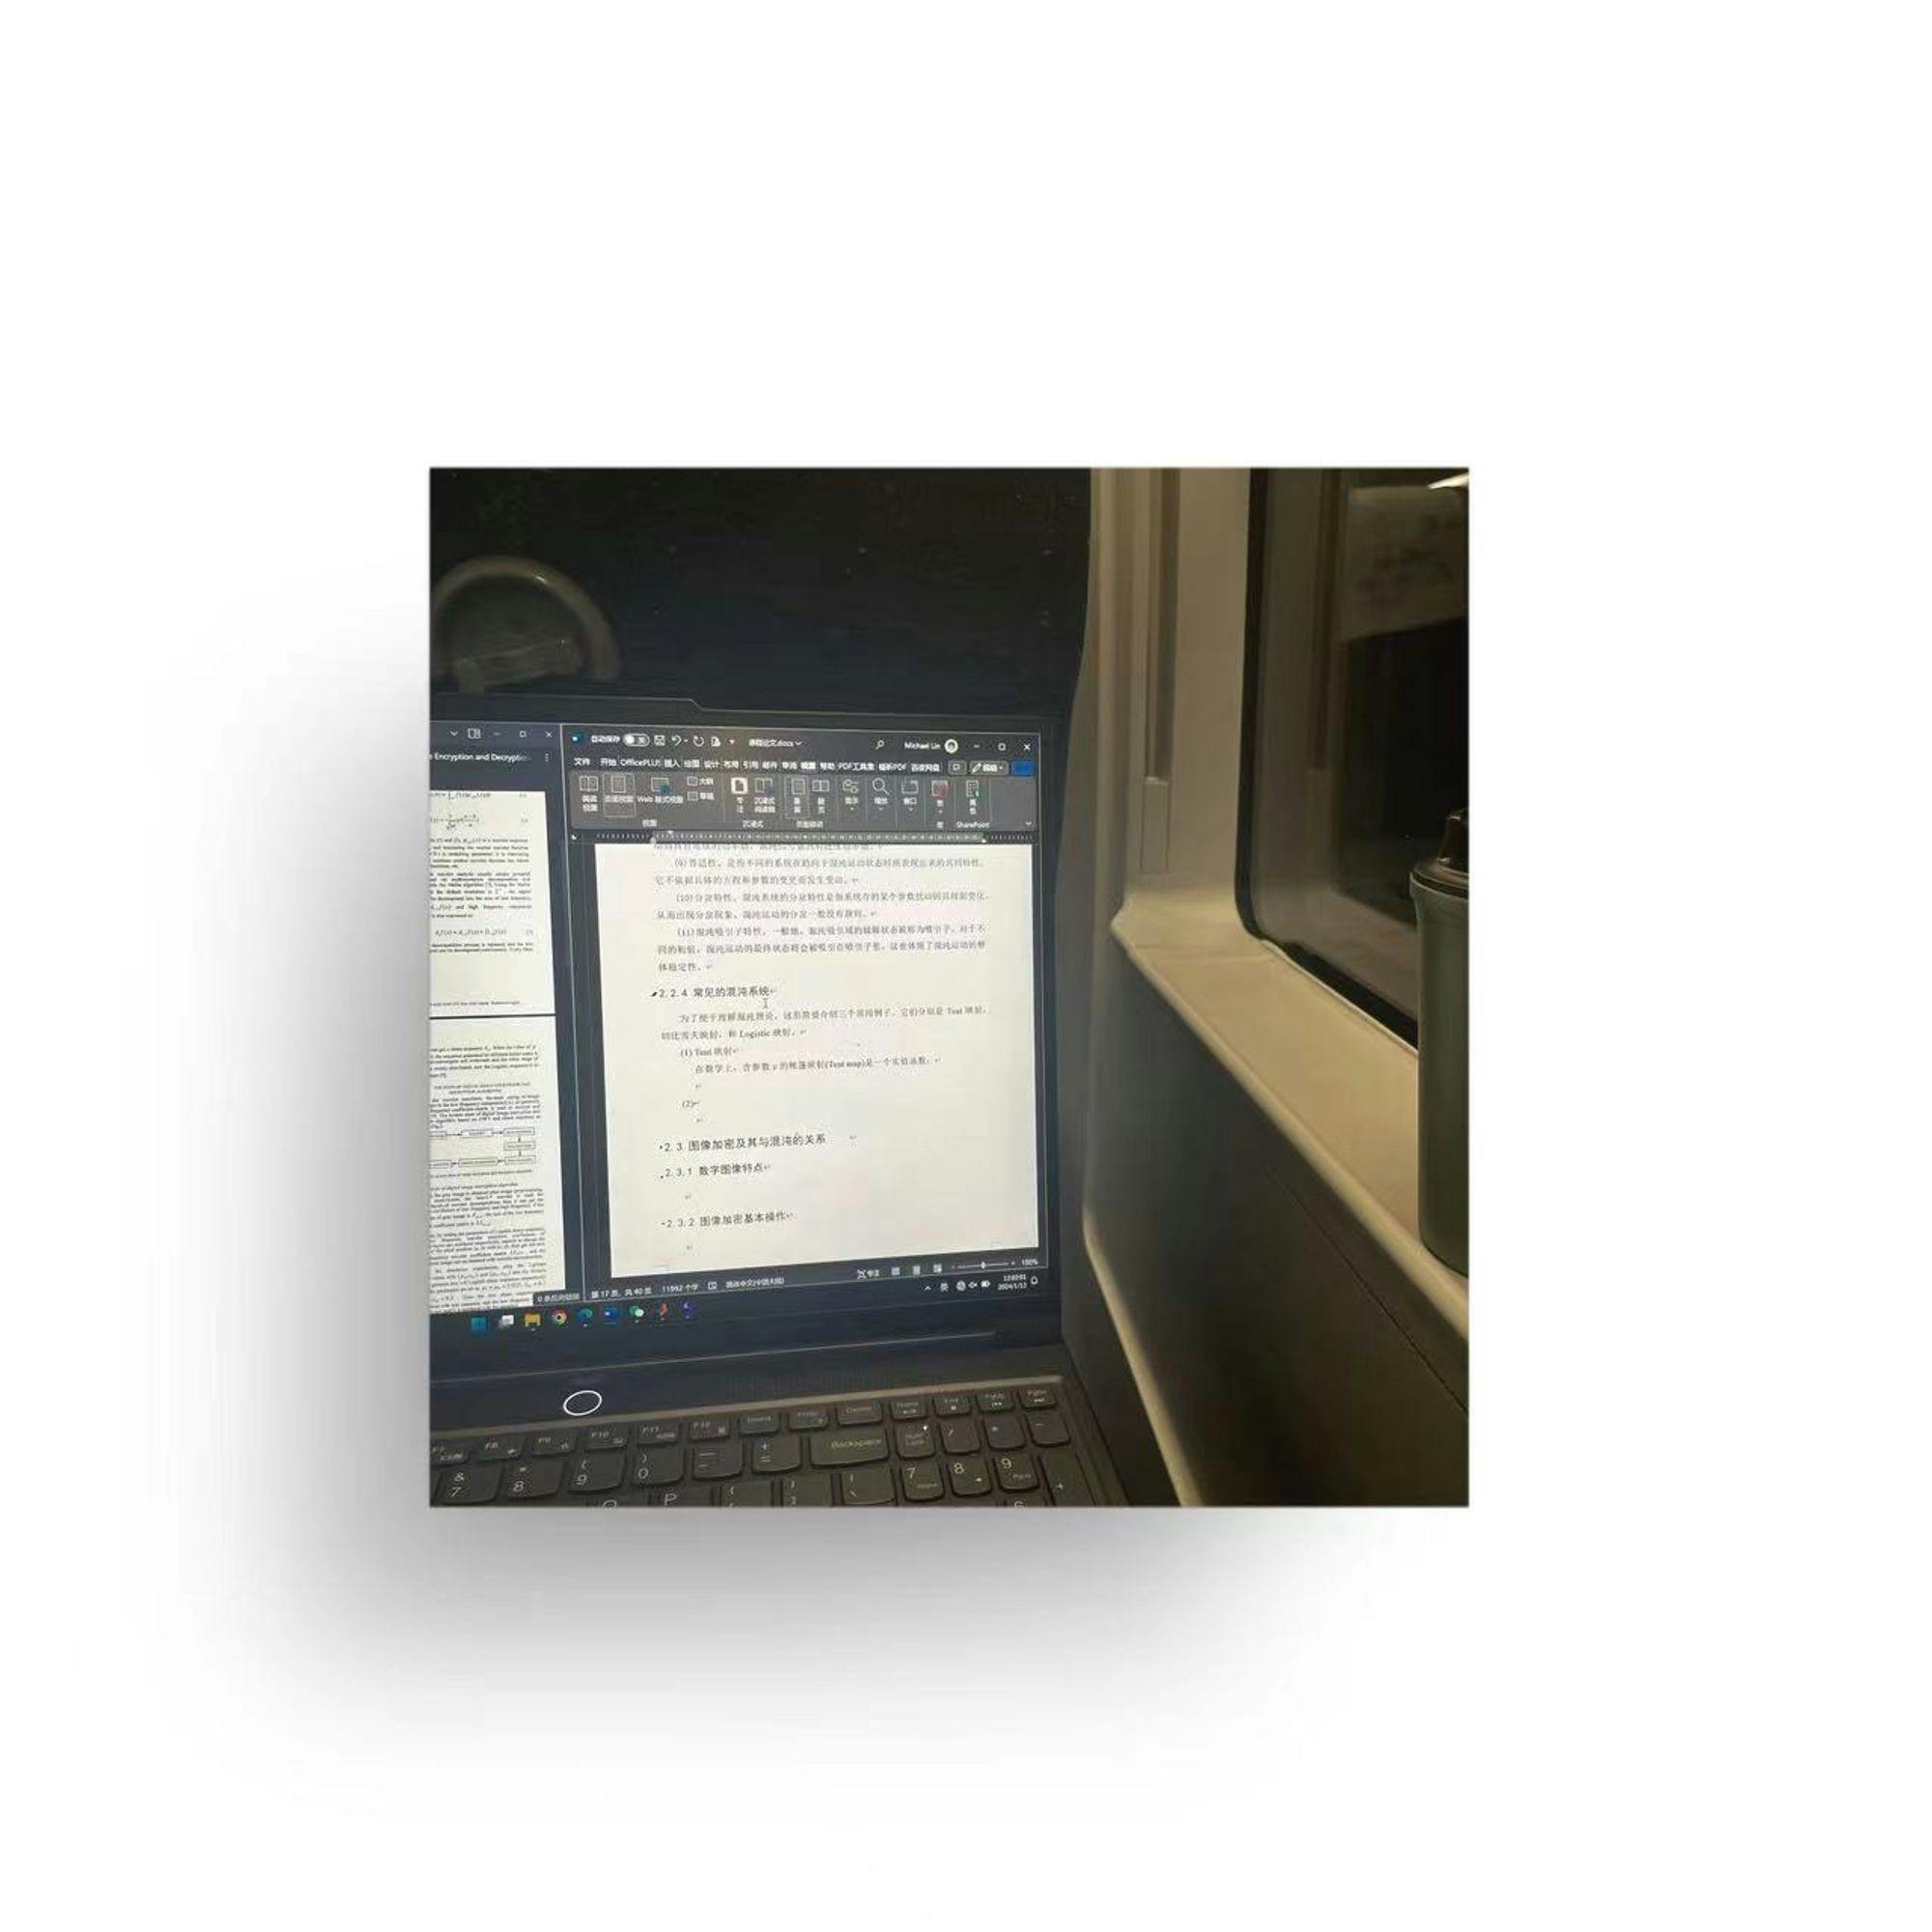 在高铁上狼狈地掏出电脑赶稿。（小时候看见别人在高铁上掏出笔记本办公觉得很优雅，现在不会这样想了。不是迫不得已谁愿意在高铁上还工作）